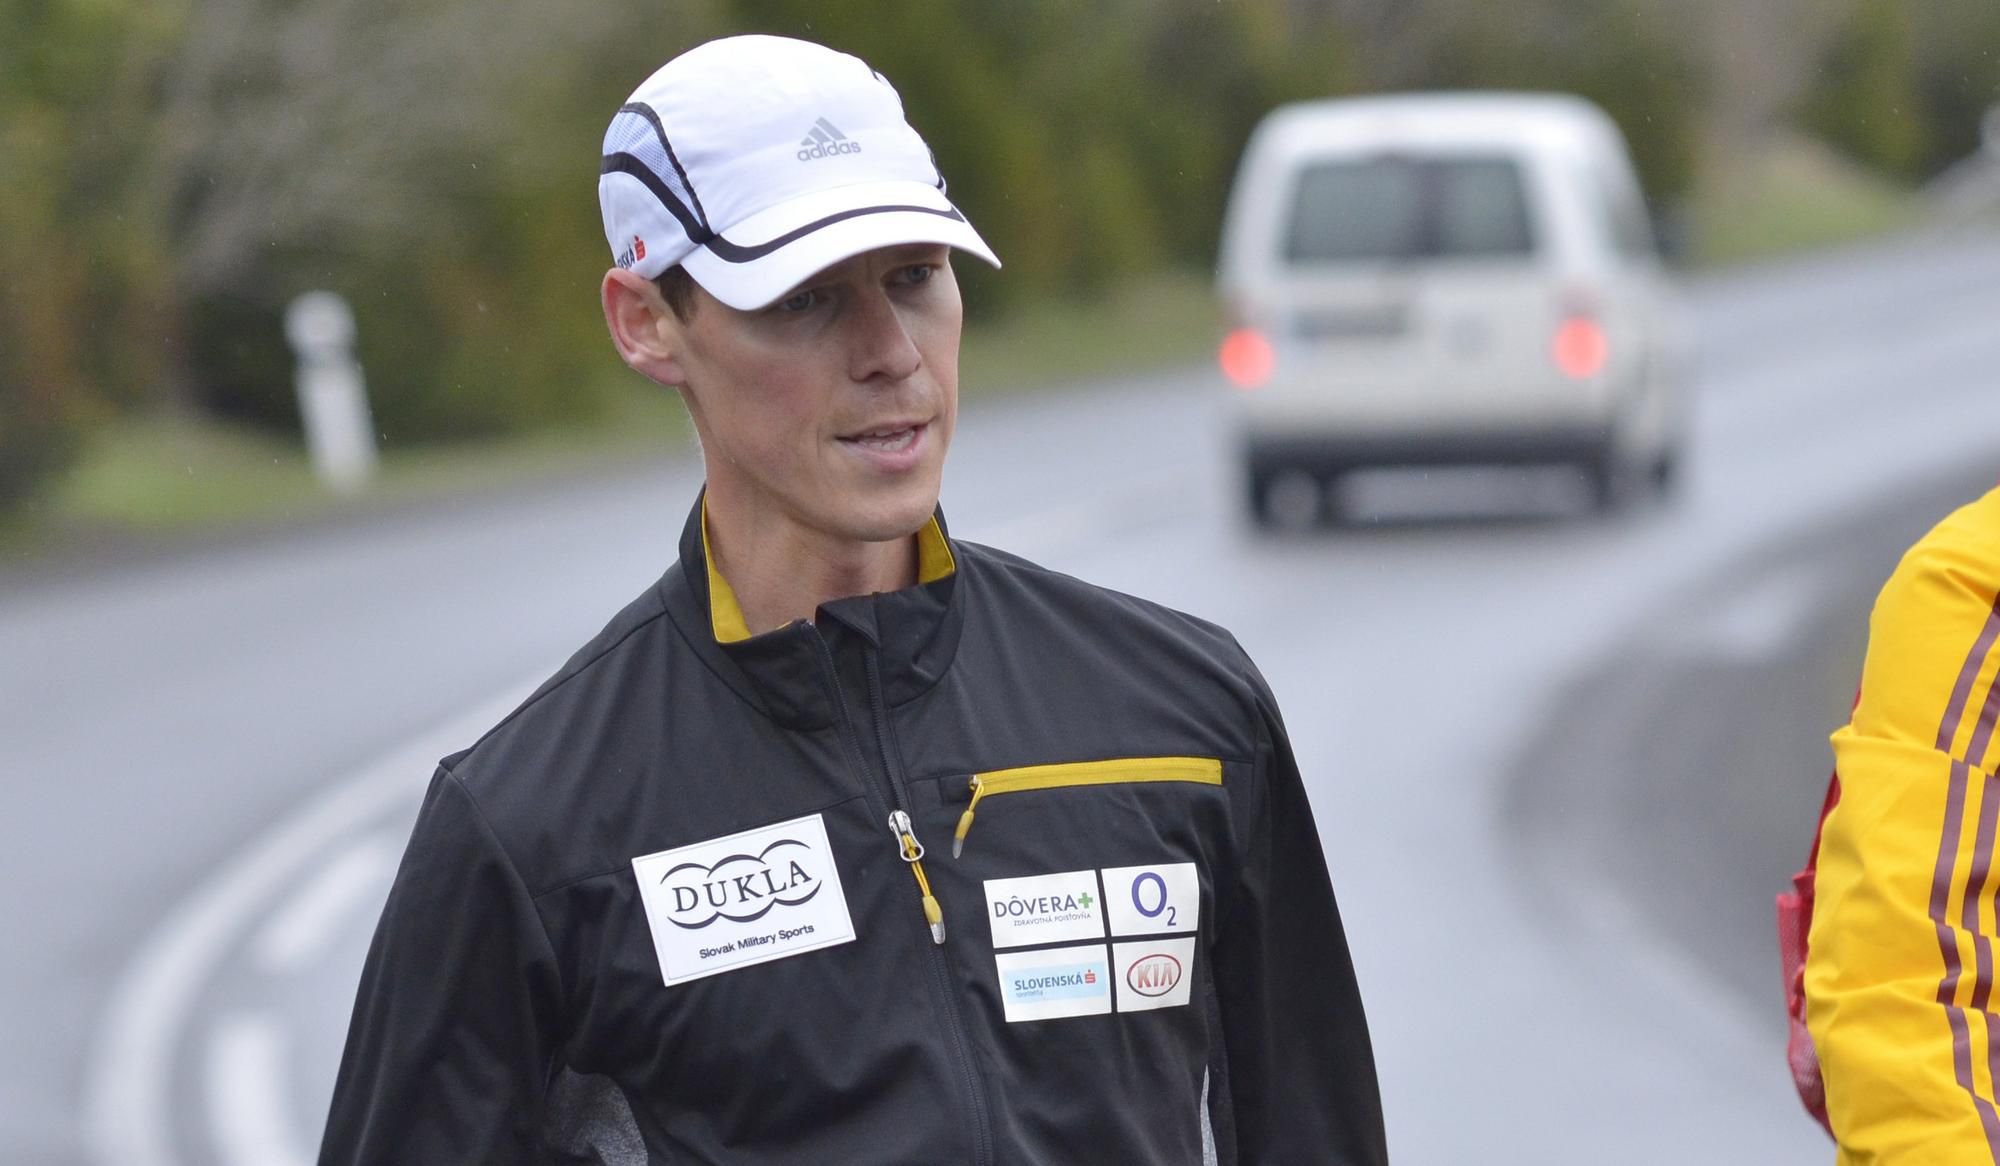 Olympijský víťaz a majster sveta v chôdzi na 50 km z Ria de Janeiro 2016 a Pekingu 2015 Matej Tóth